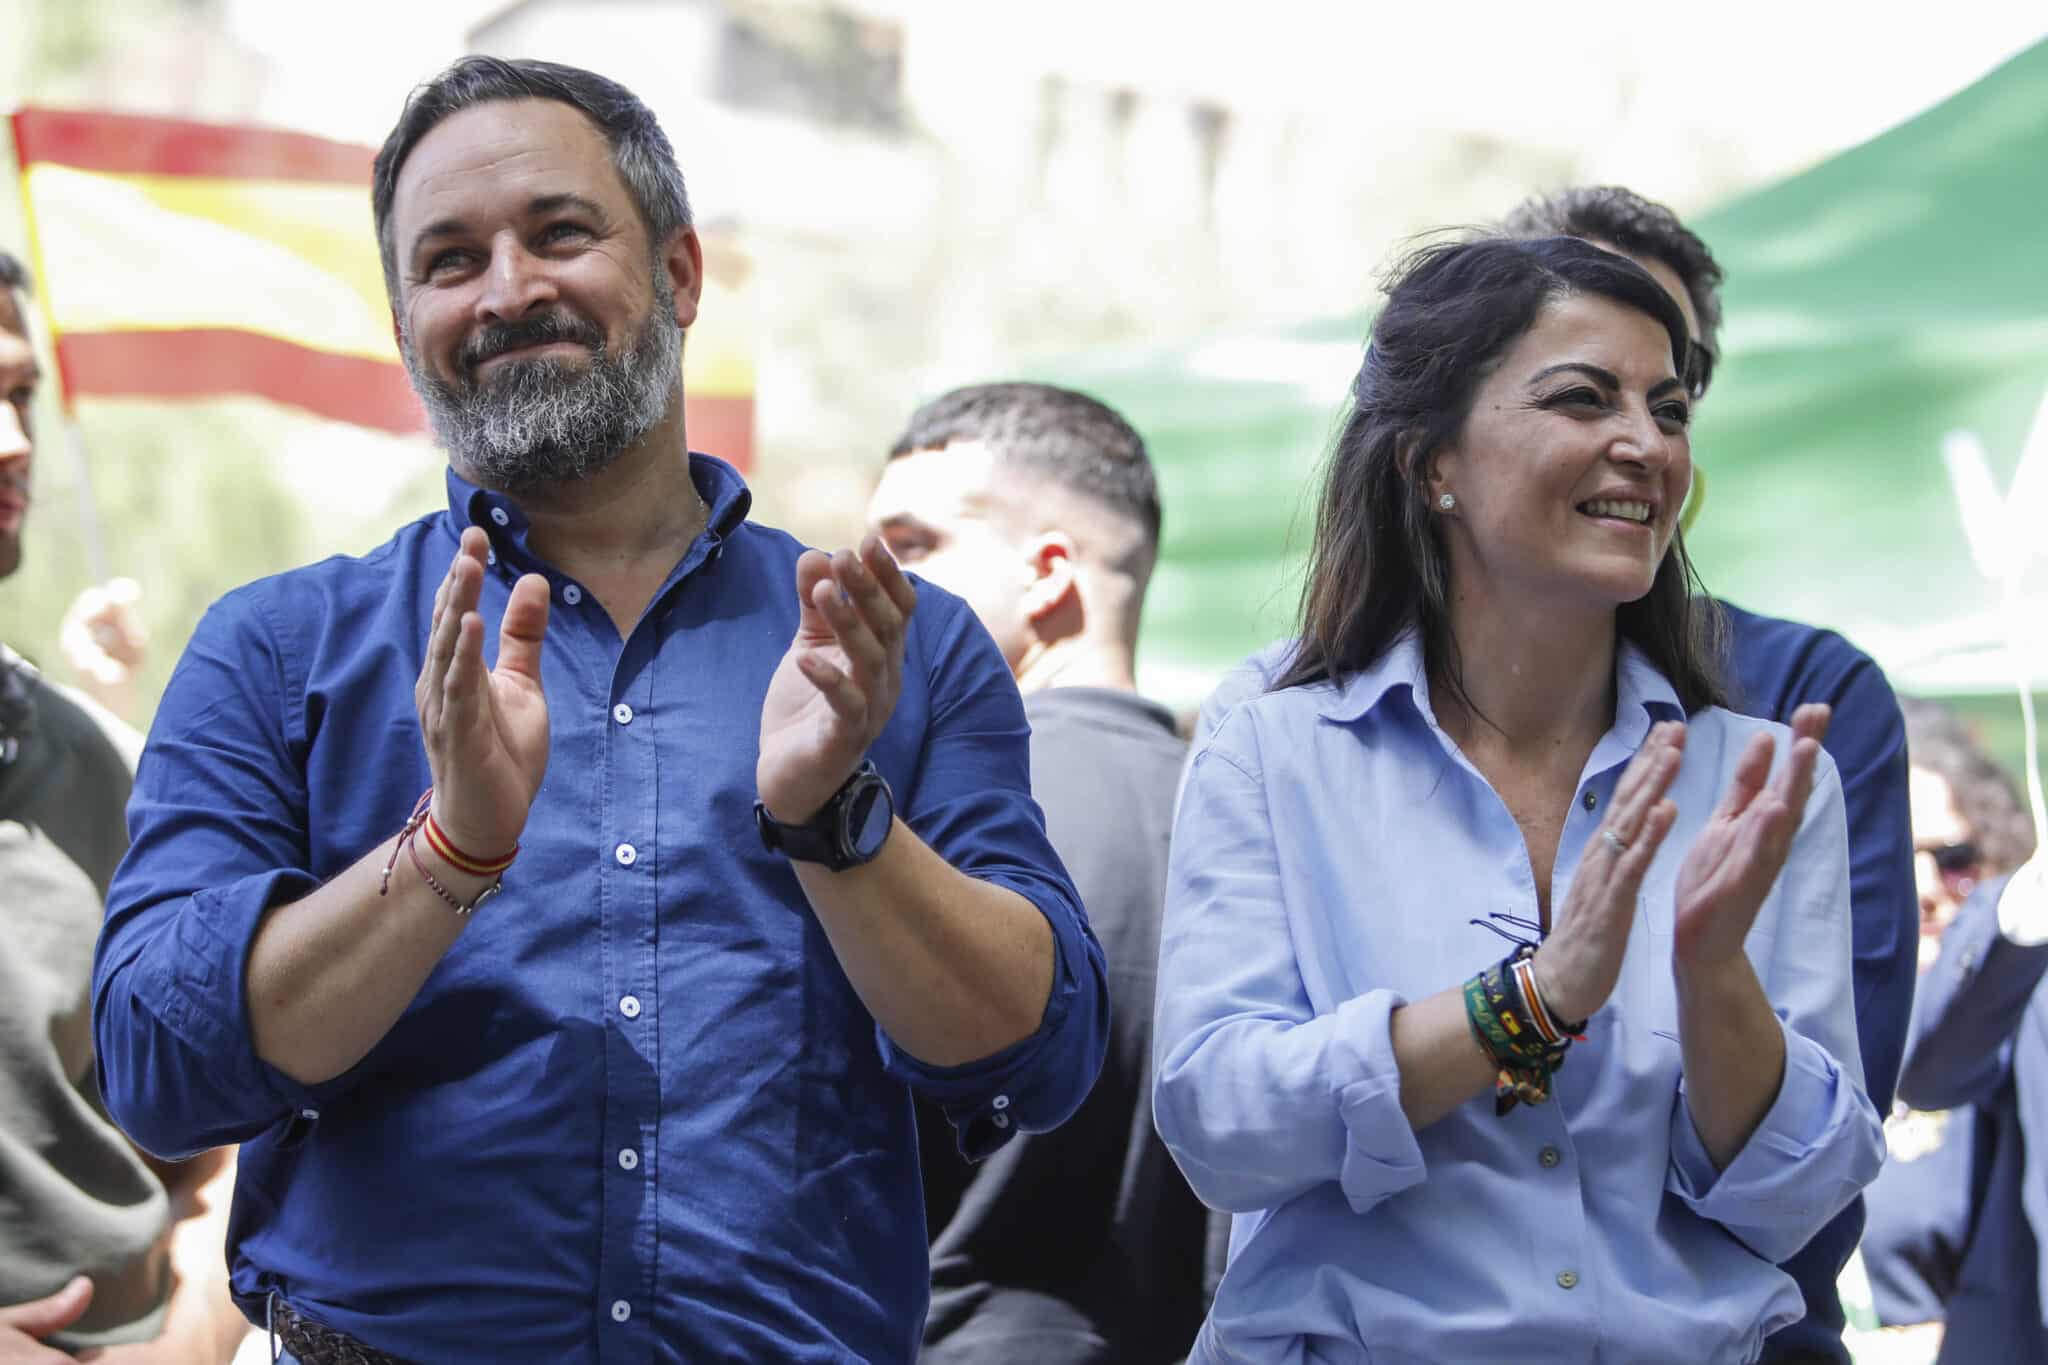 El presidente de Vox, Santiago Abascal, y la candidata de Vox a la Presidencia de la Junta, Macarena Olona en el acto de precampaña de la formación en Granada.